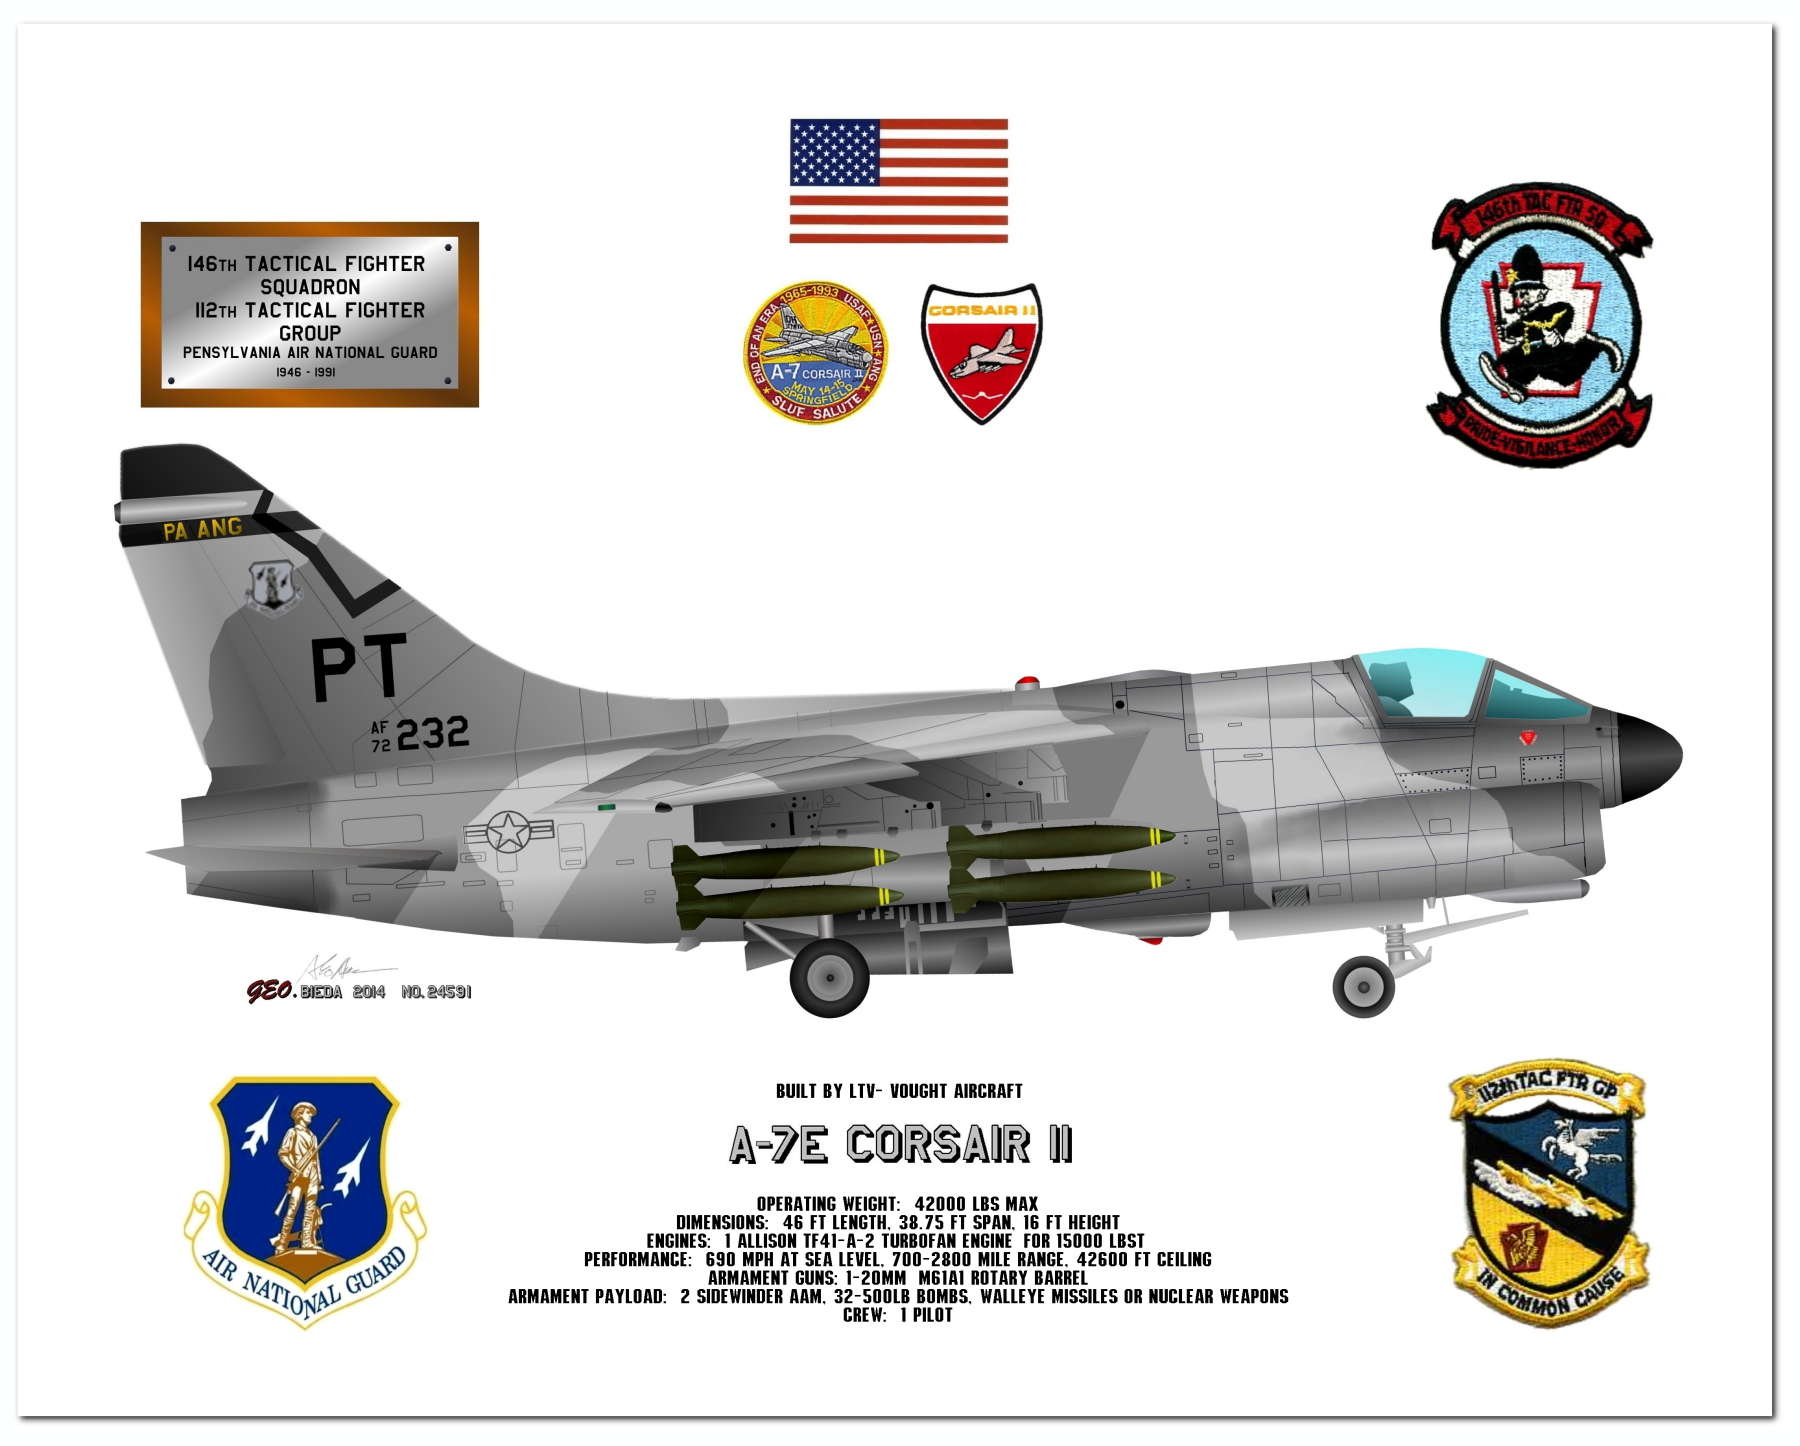  A-7 Corsair II Profile Drawings by George Bieda 